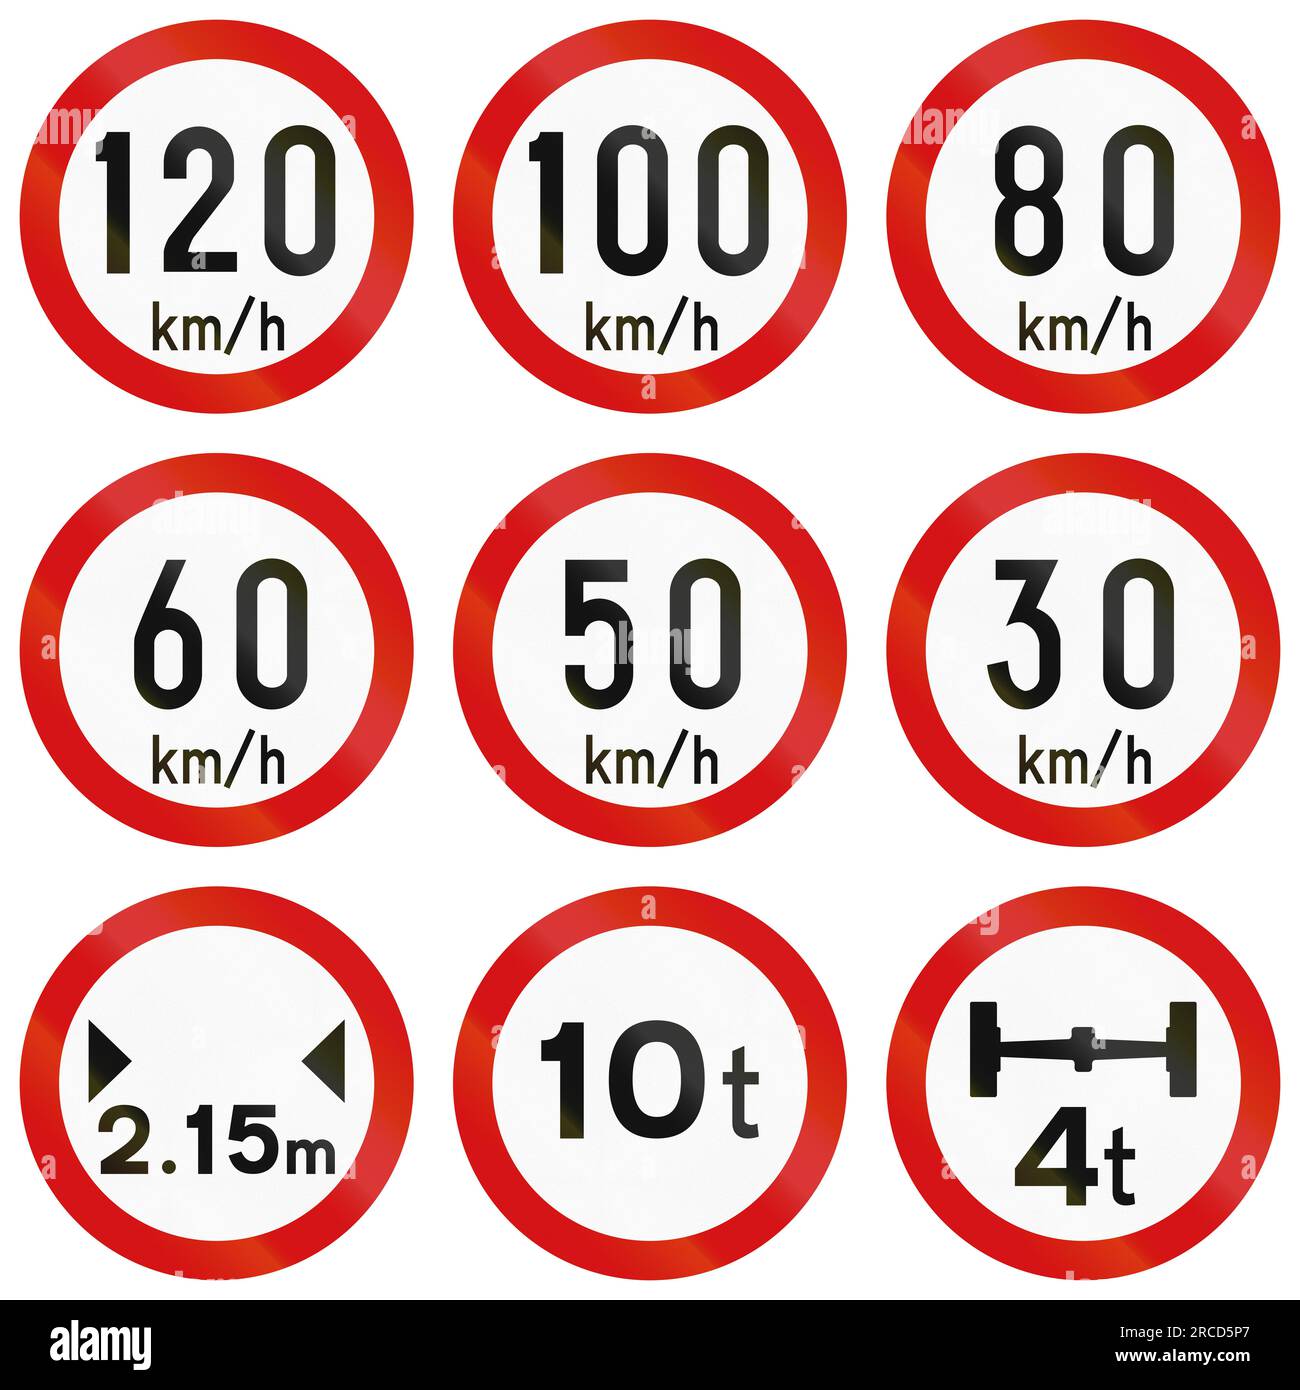 Geschwindigkeitsbegrenzung 120 Km/H In Irland. Stockfoto